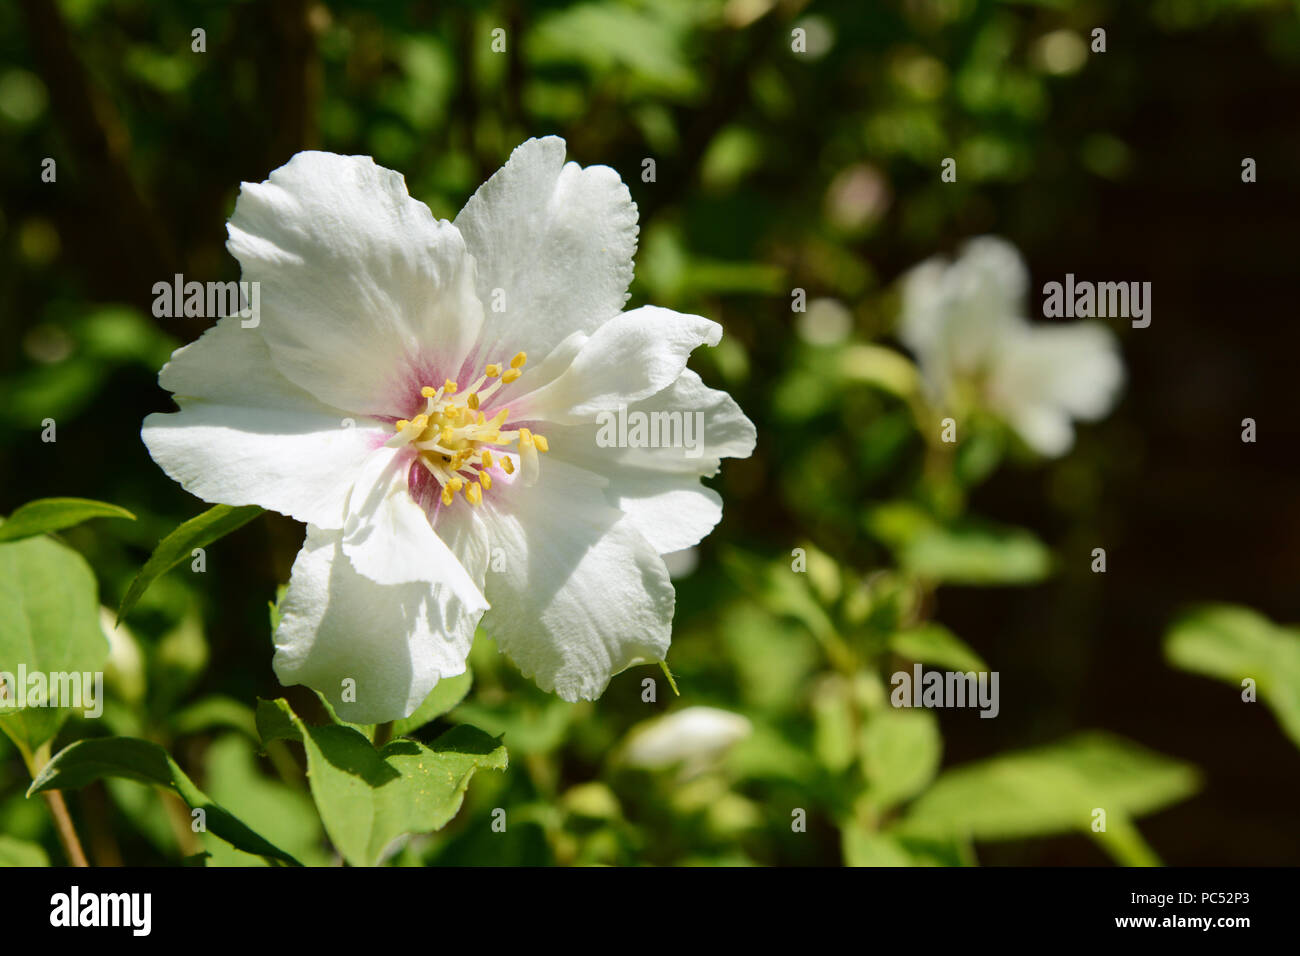 White philadelphus - mock orange - flower against green background Stock Photo